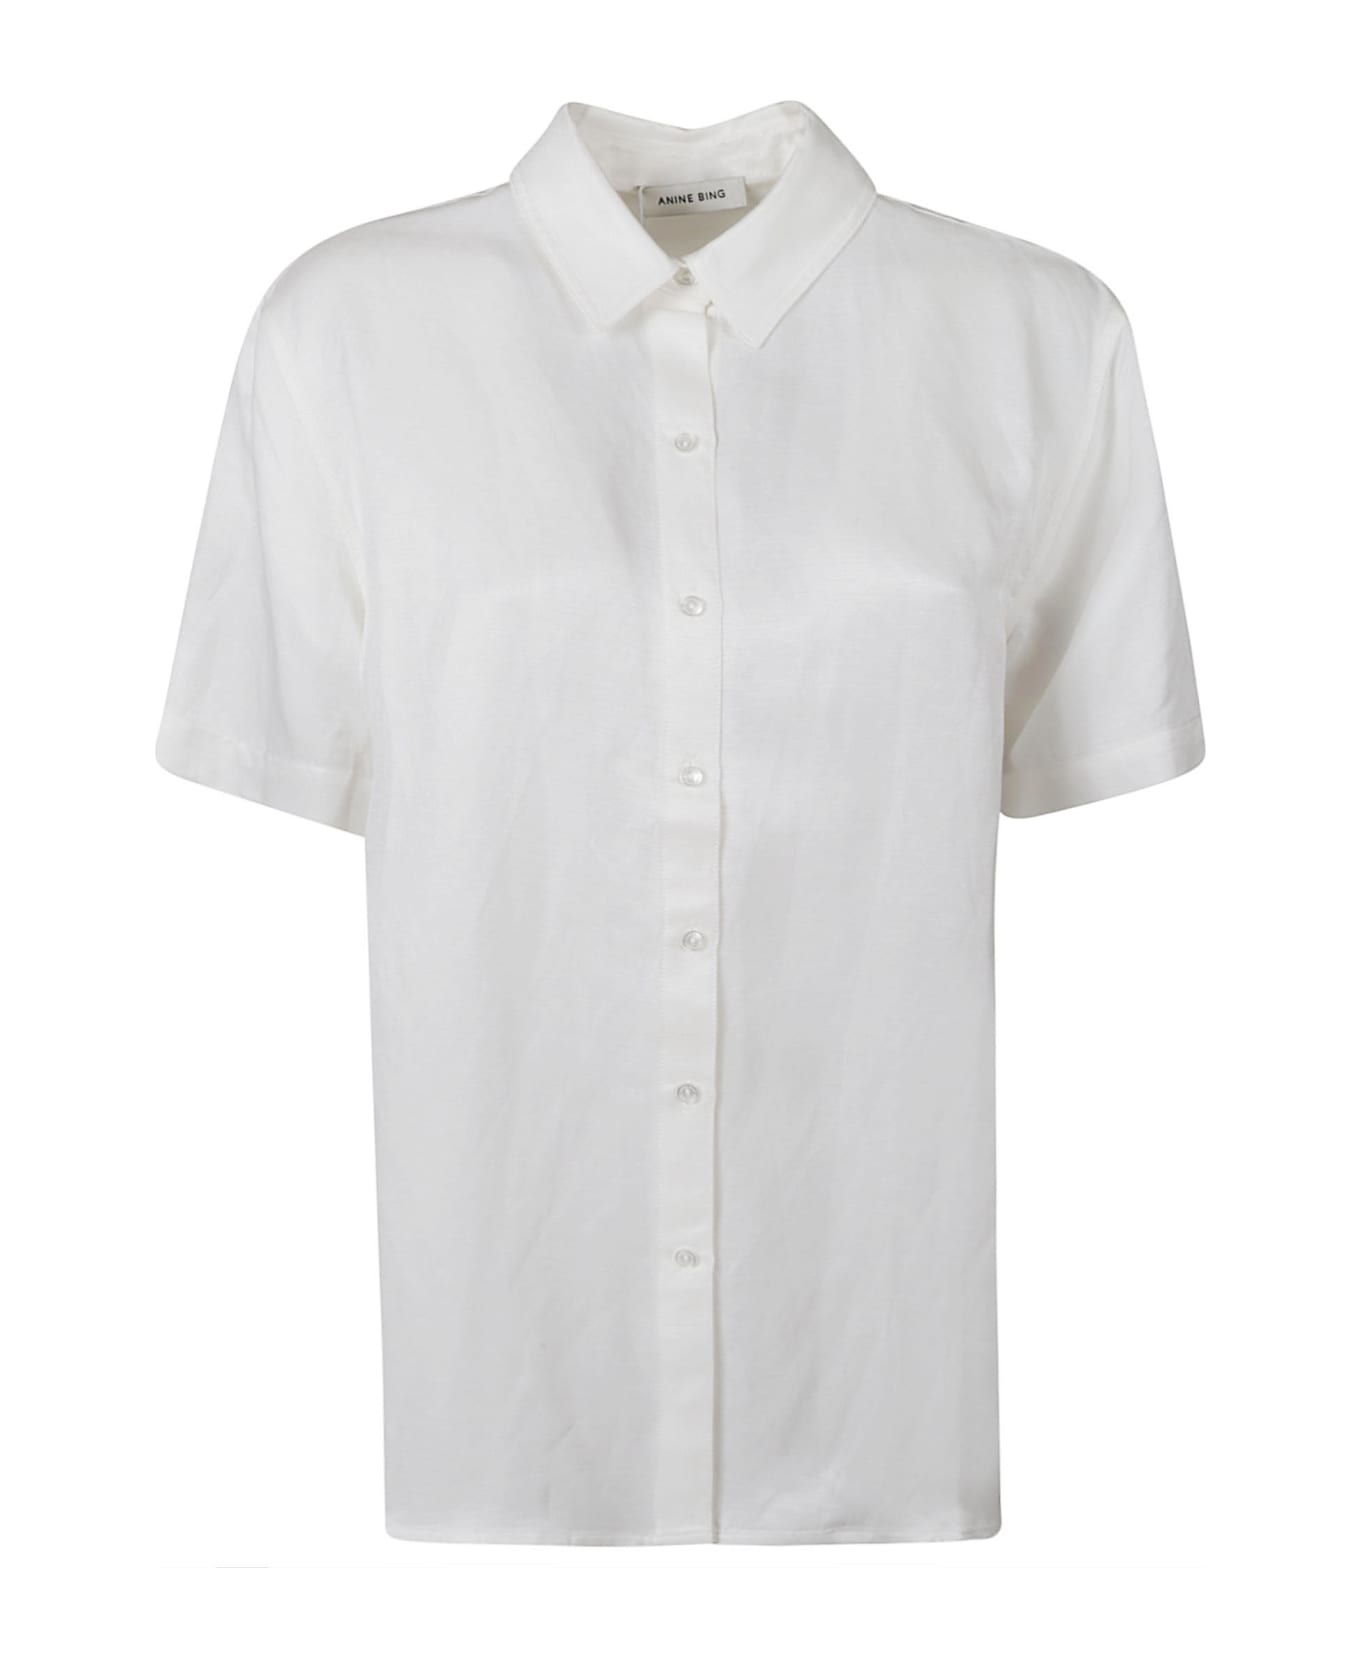 Anine Bing Short-sleeved Plain Shirt - White